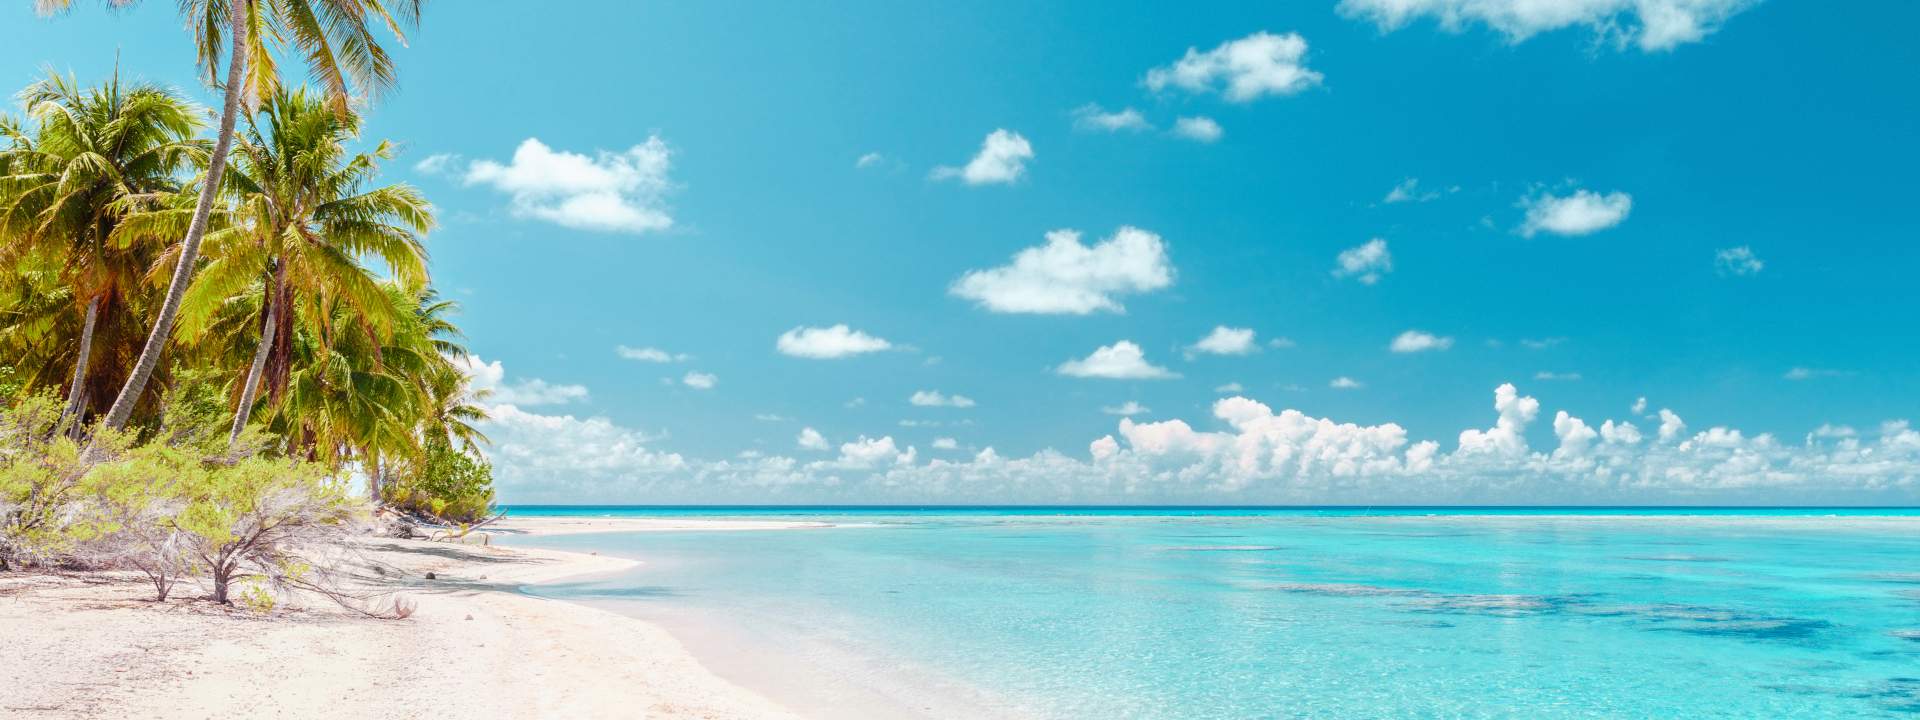 Explore the sublime atolls of the Tuamotu archipelago